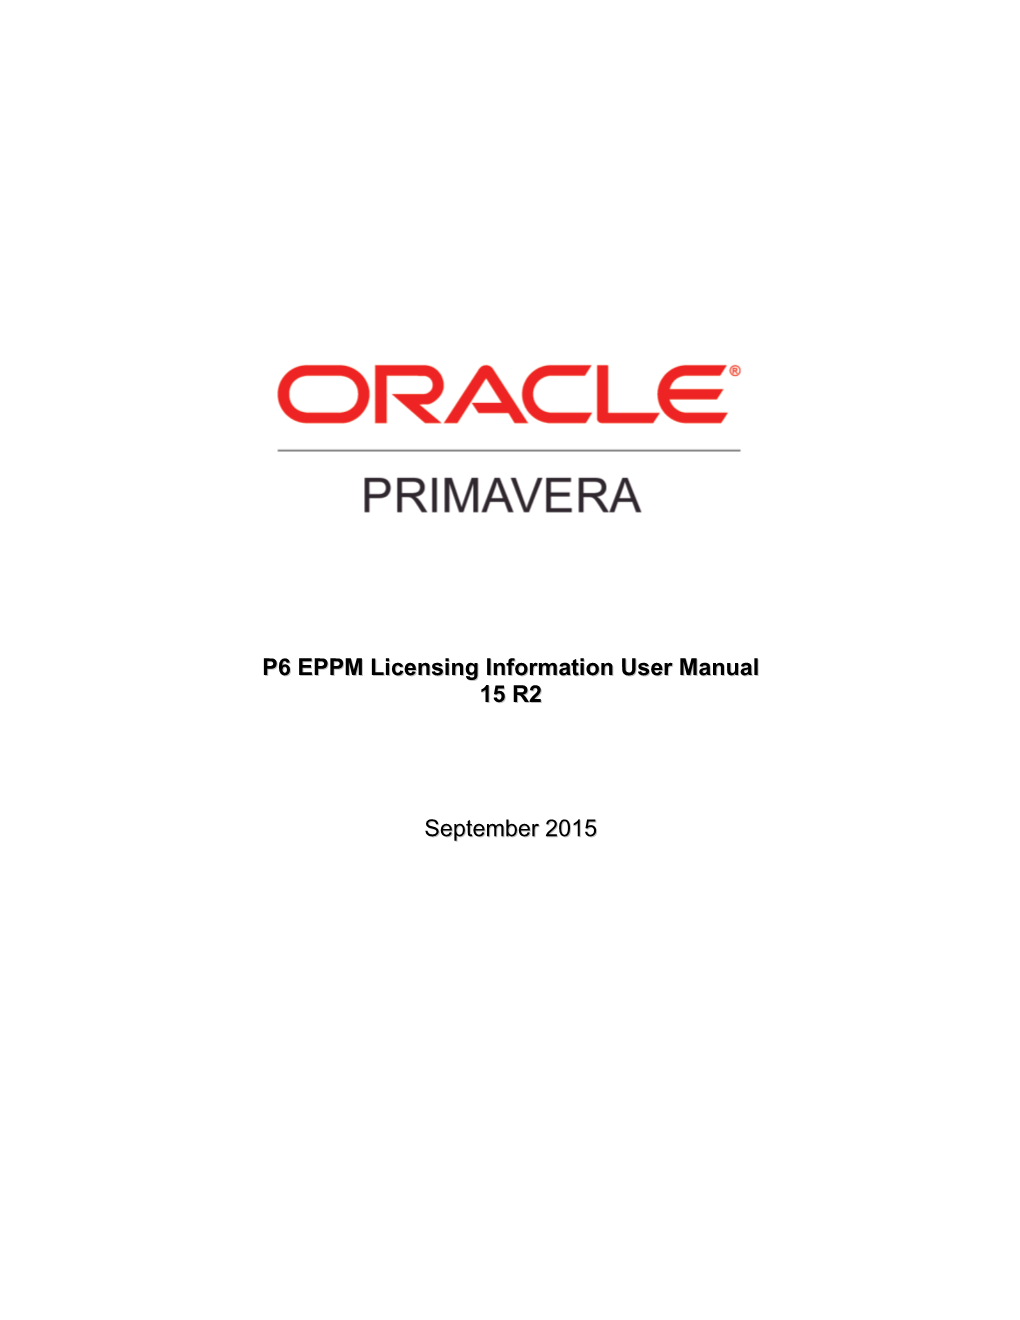 P6 EPPM Licensing Information User Manual 15 R2 September 2015